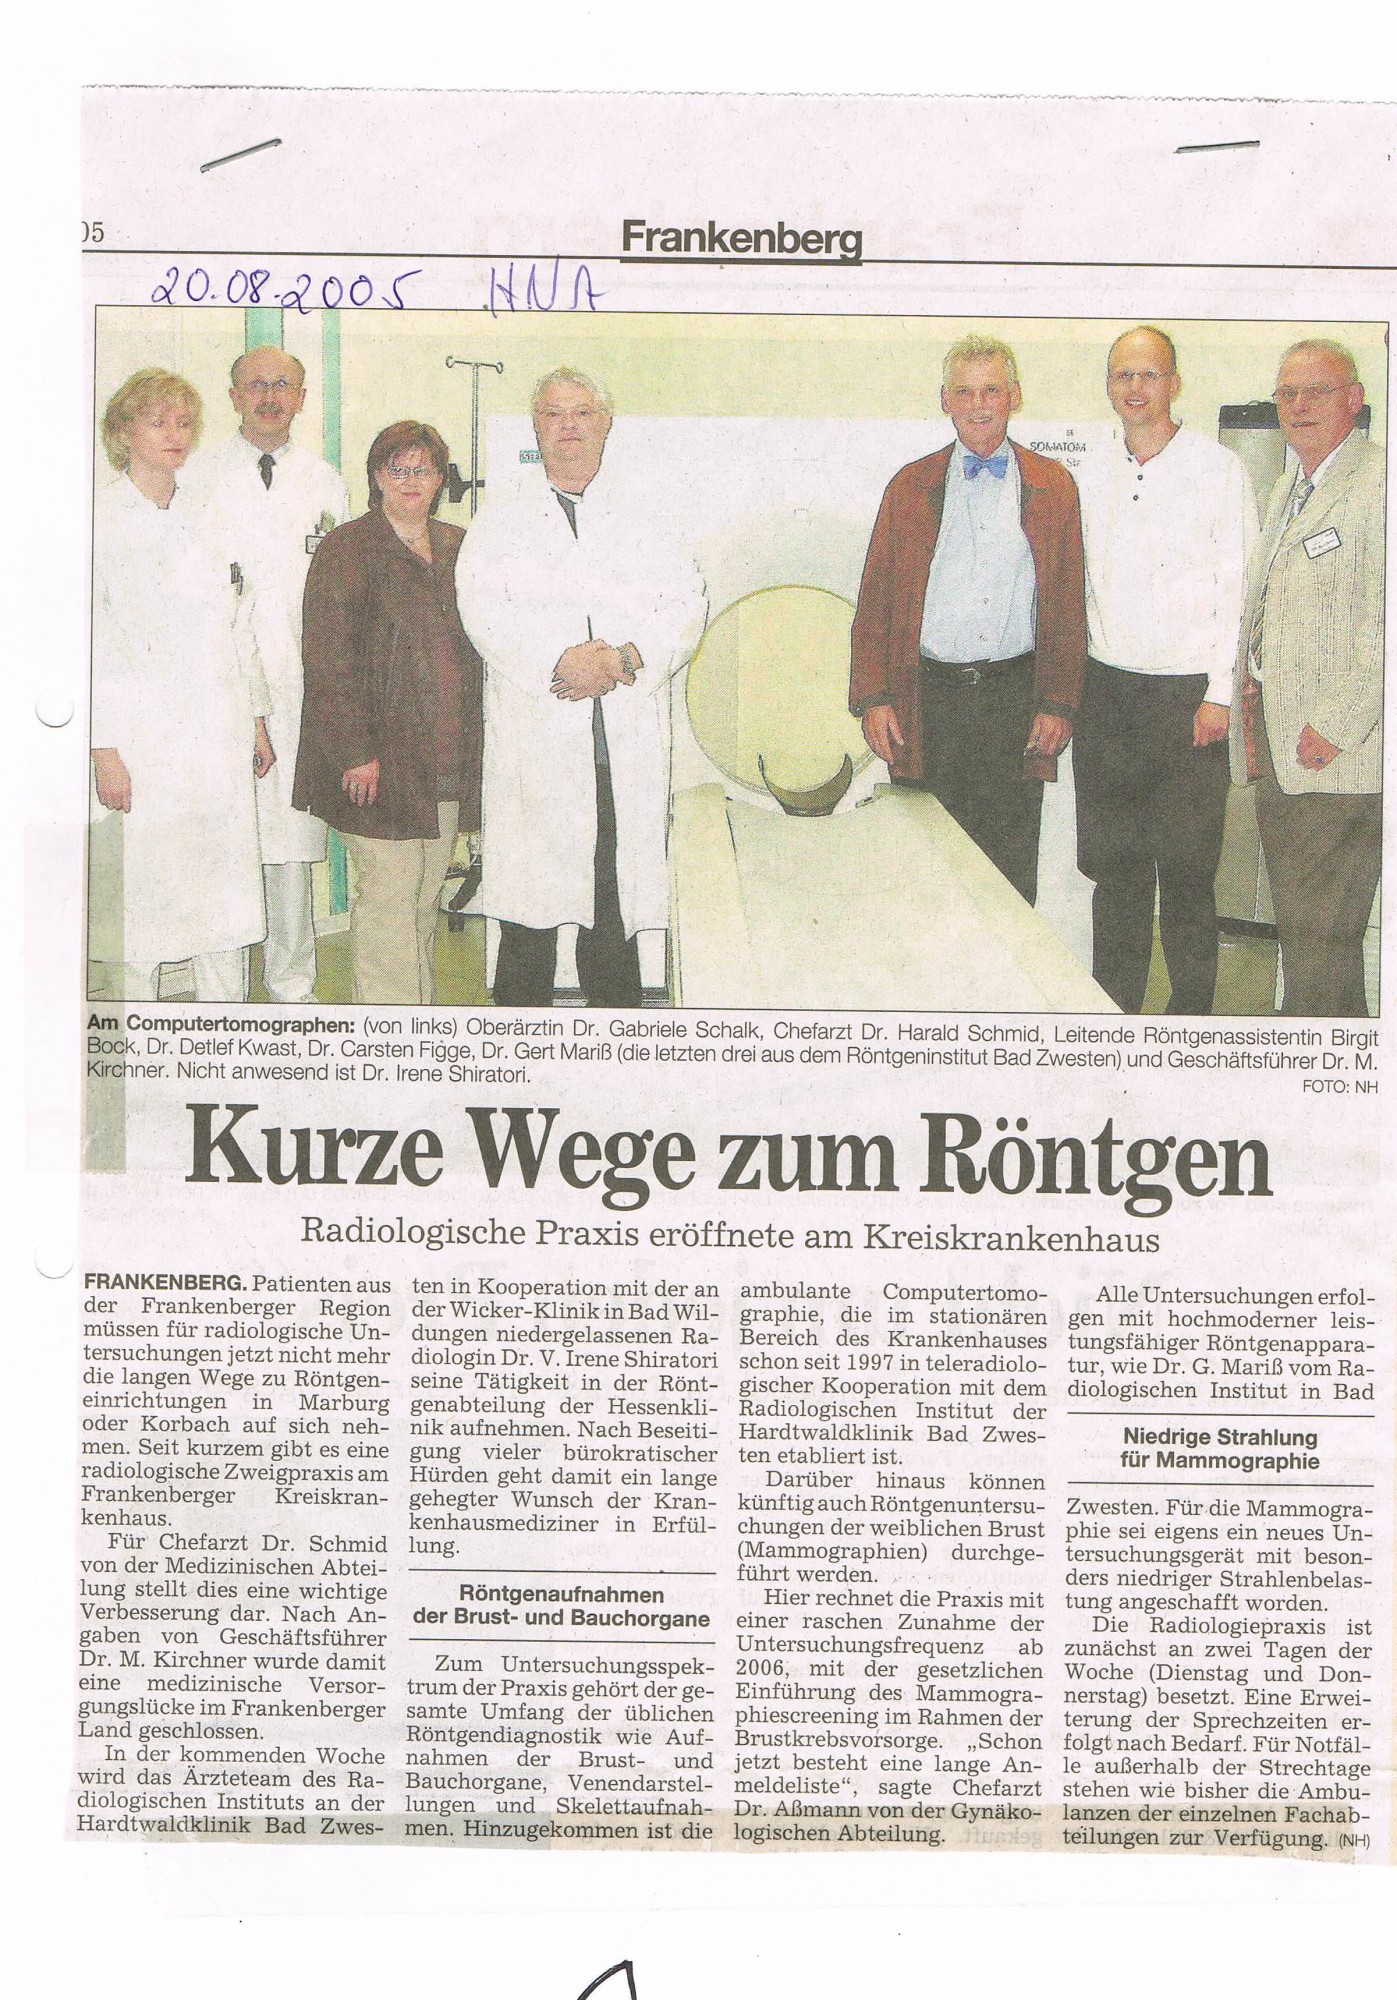 2005-08-20 Kurze Wege zum Röntgen-001